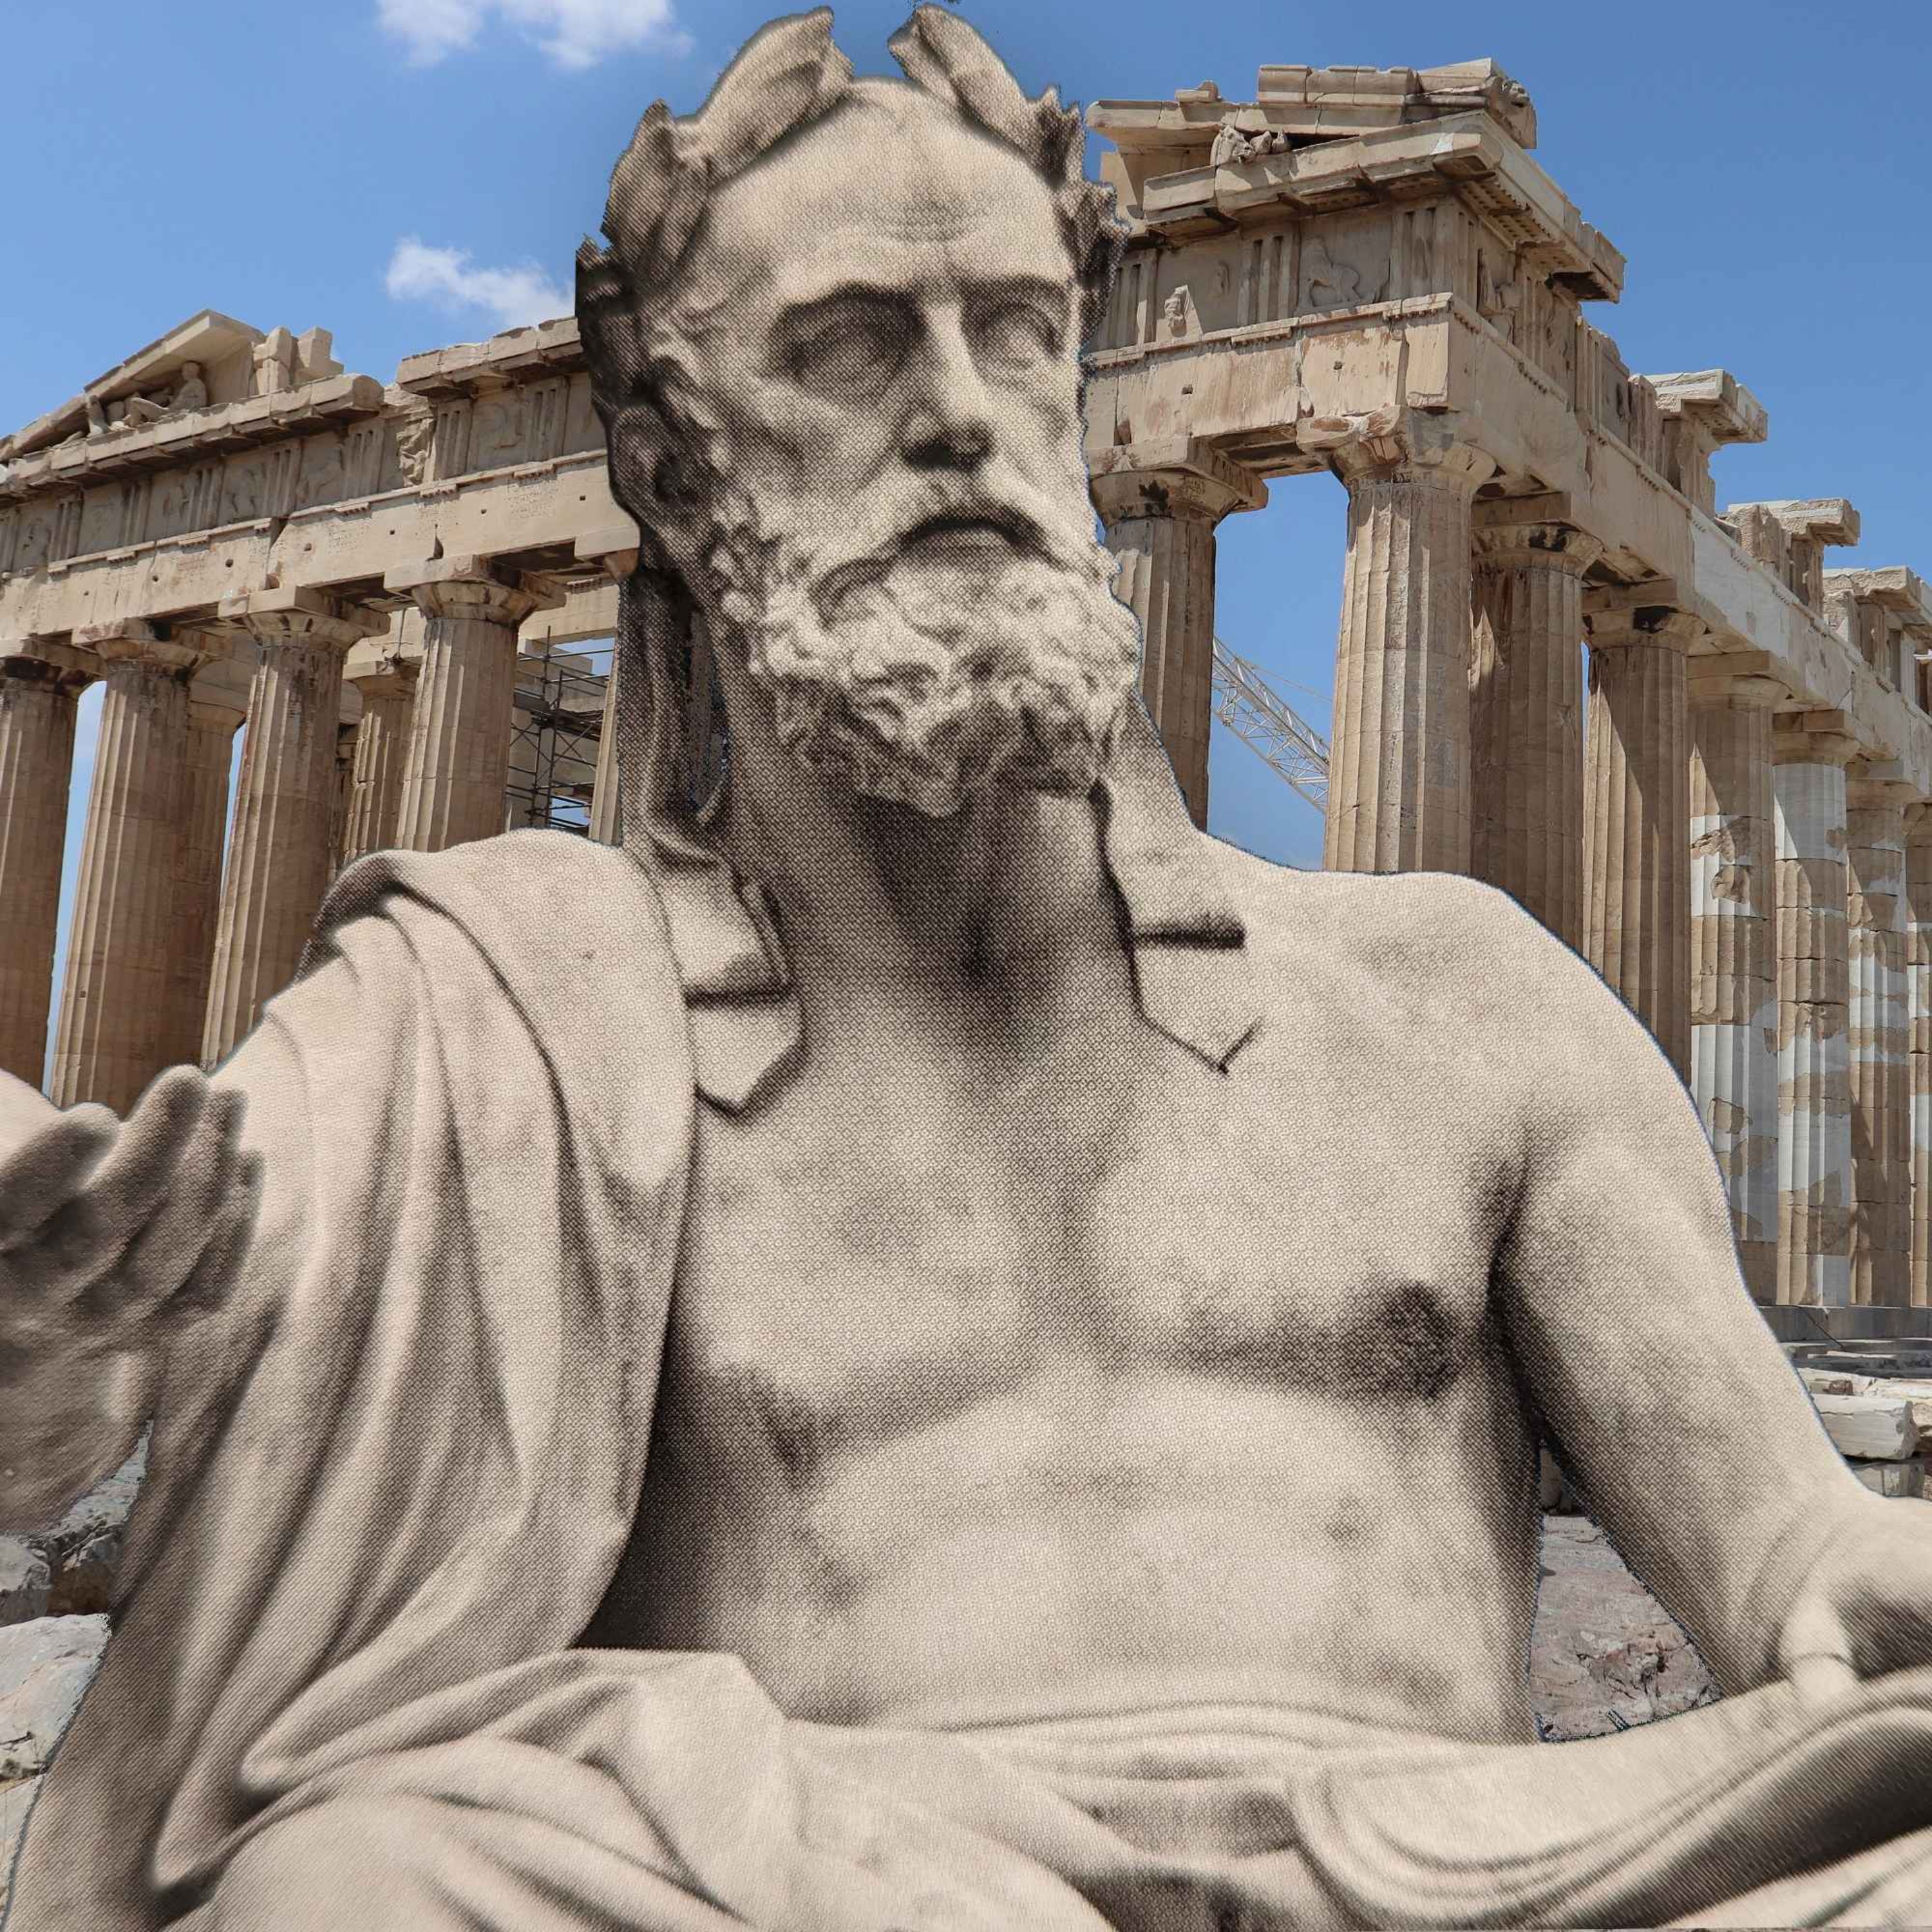 Estoicismo - quatro lições de Epicteto para uma sabedoria de vida